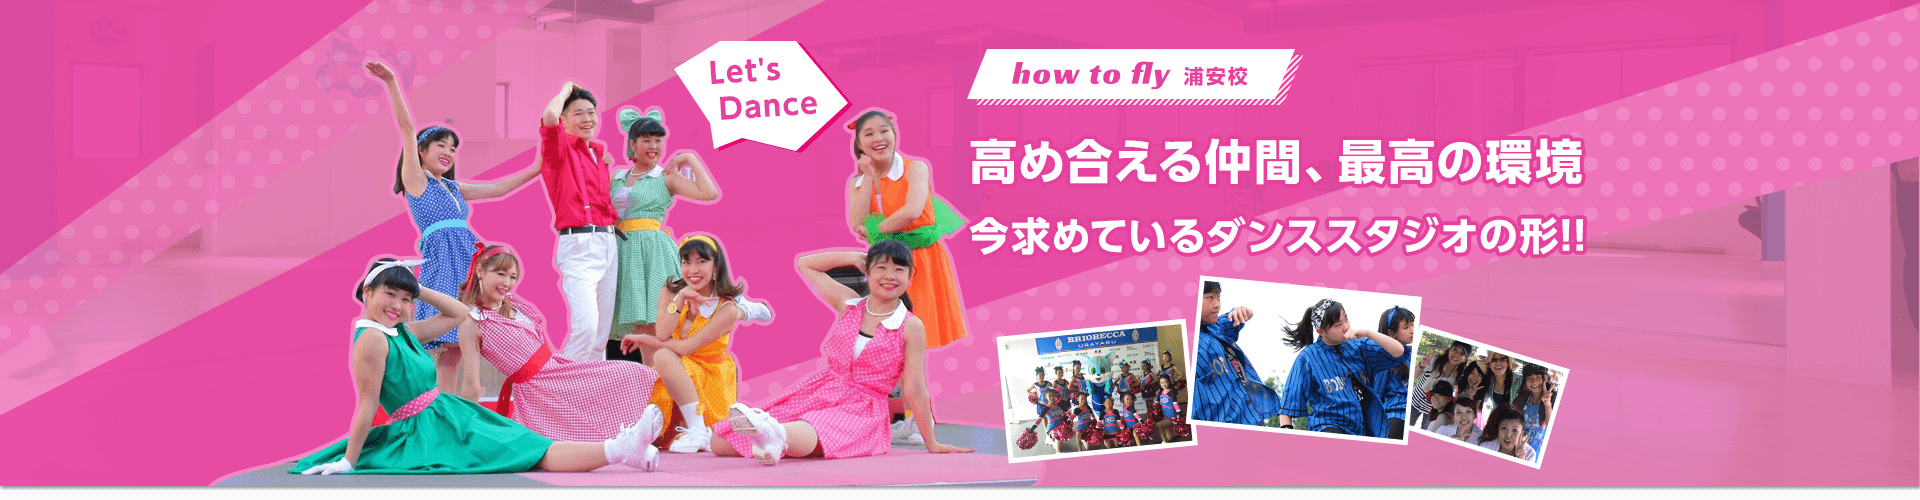 高め合える仲間、最高の環境 今求めているダンススタジオの形 how to fly 新浦安フェローズ校